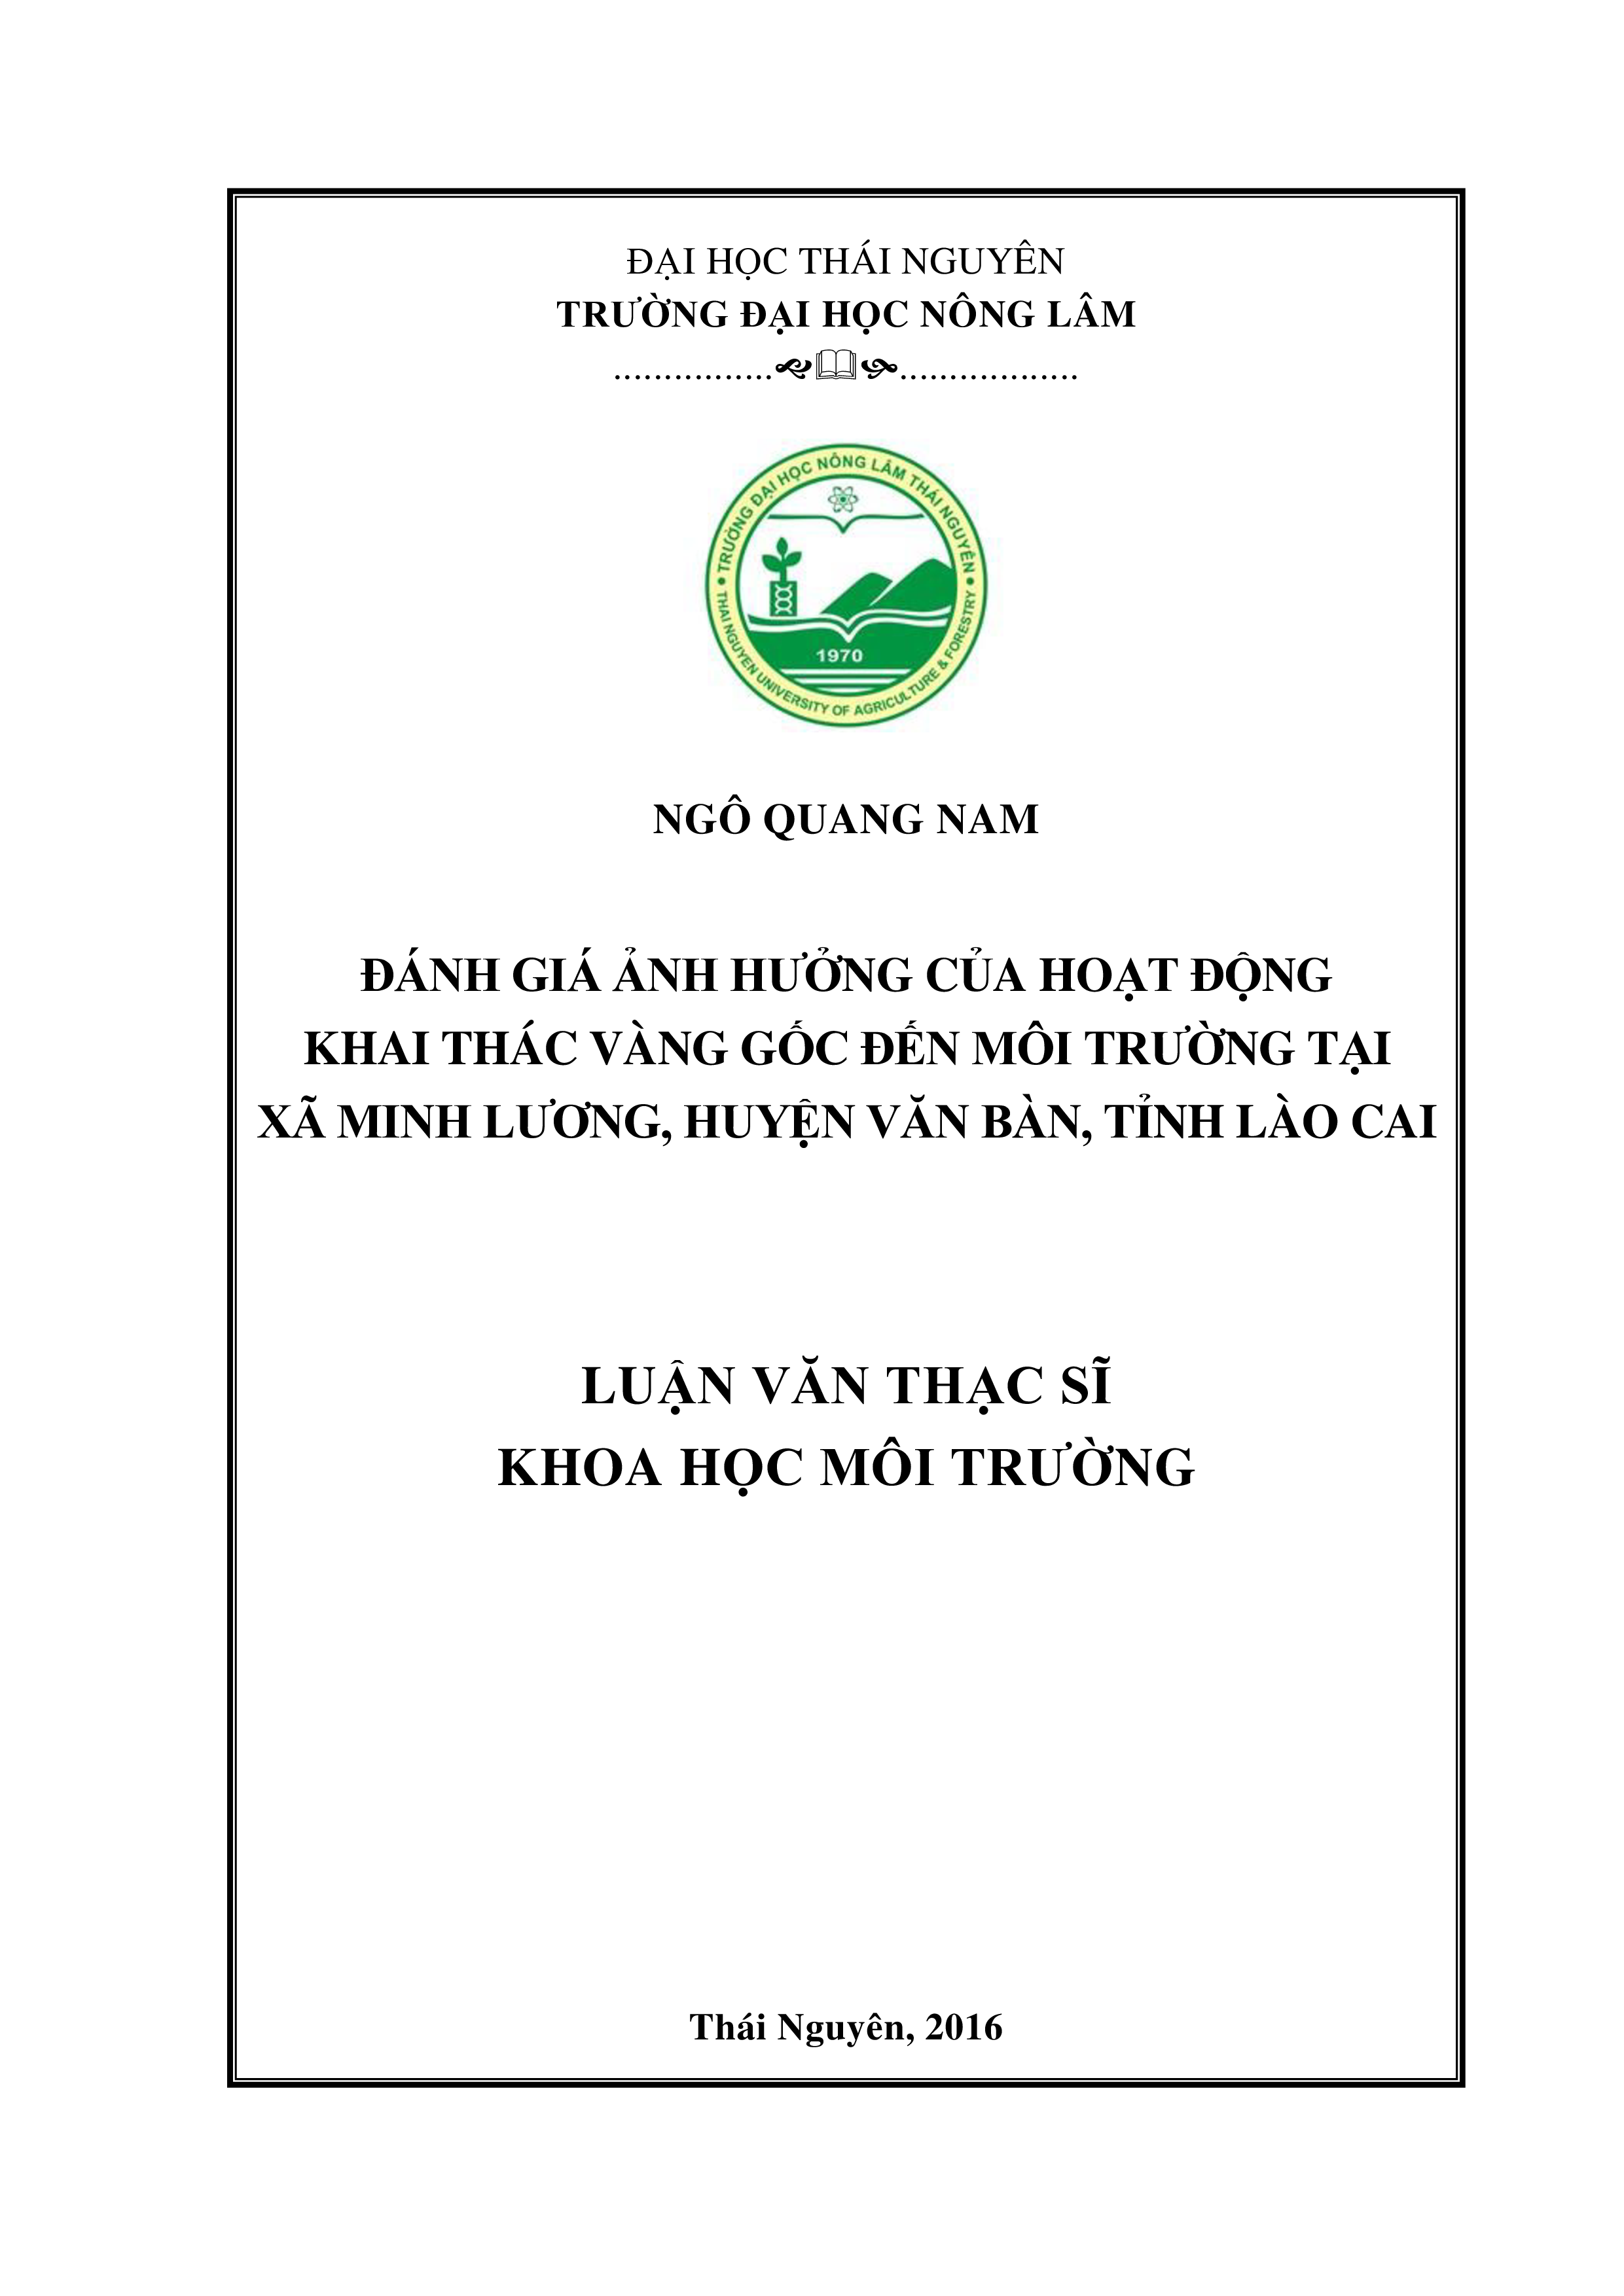 Đánh giá  ảnh hưởng của hoạt động khai thác vàng gốc đến môi  trường tại xã Minh Lương, huyện Văn Bàn, Tỉnh Lào Cai